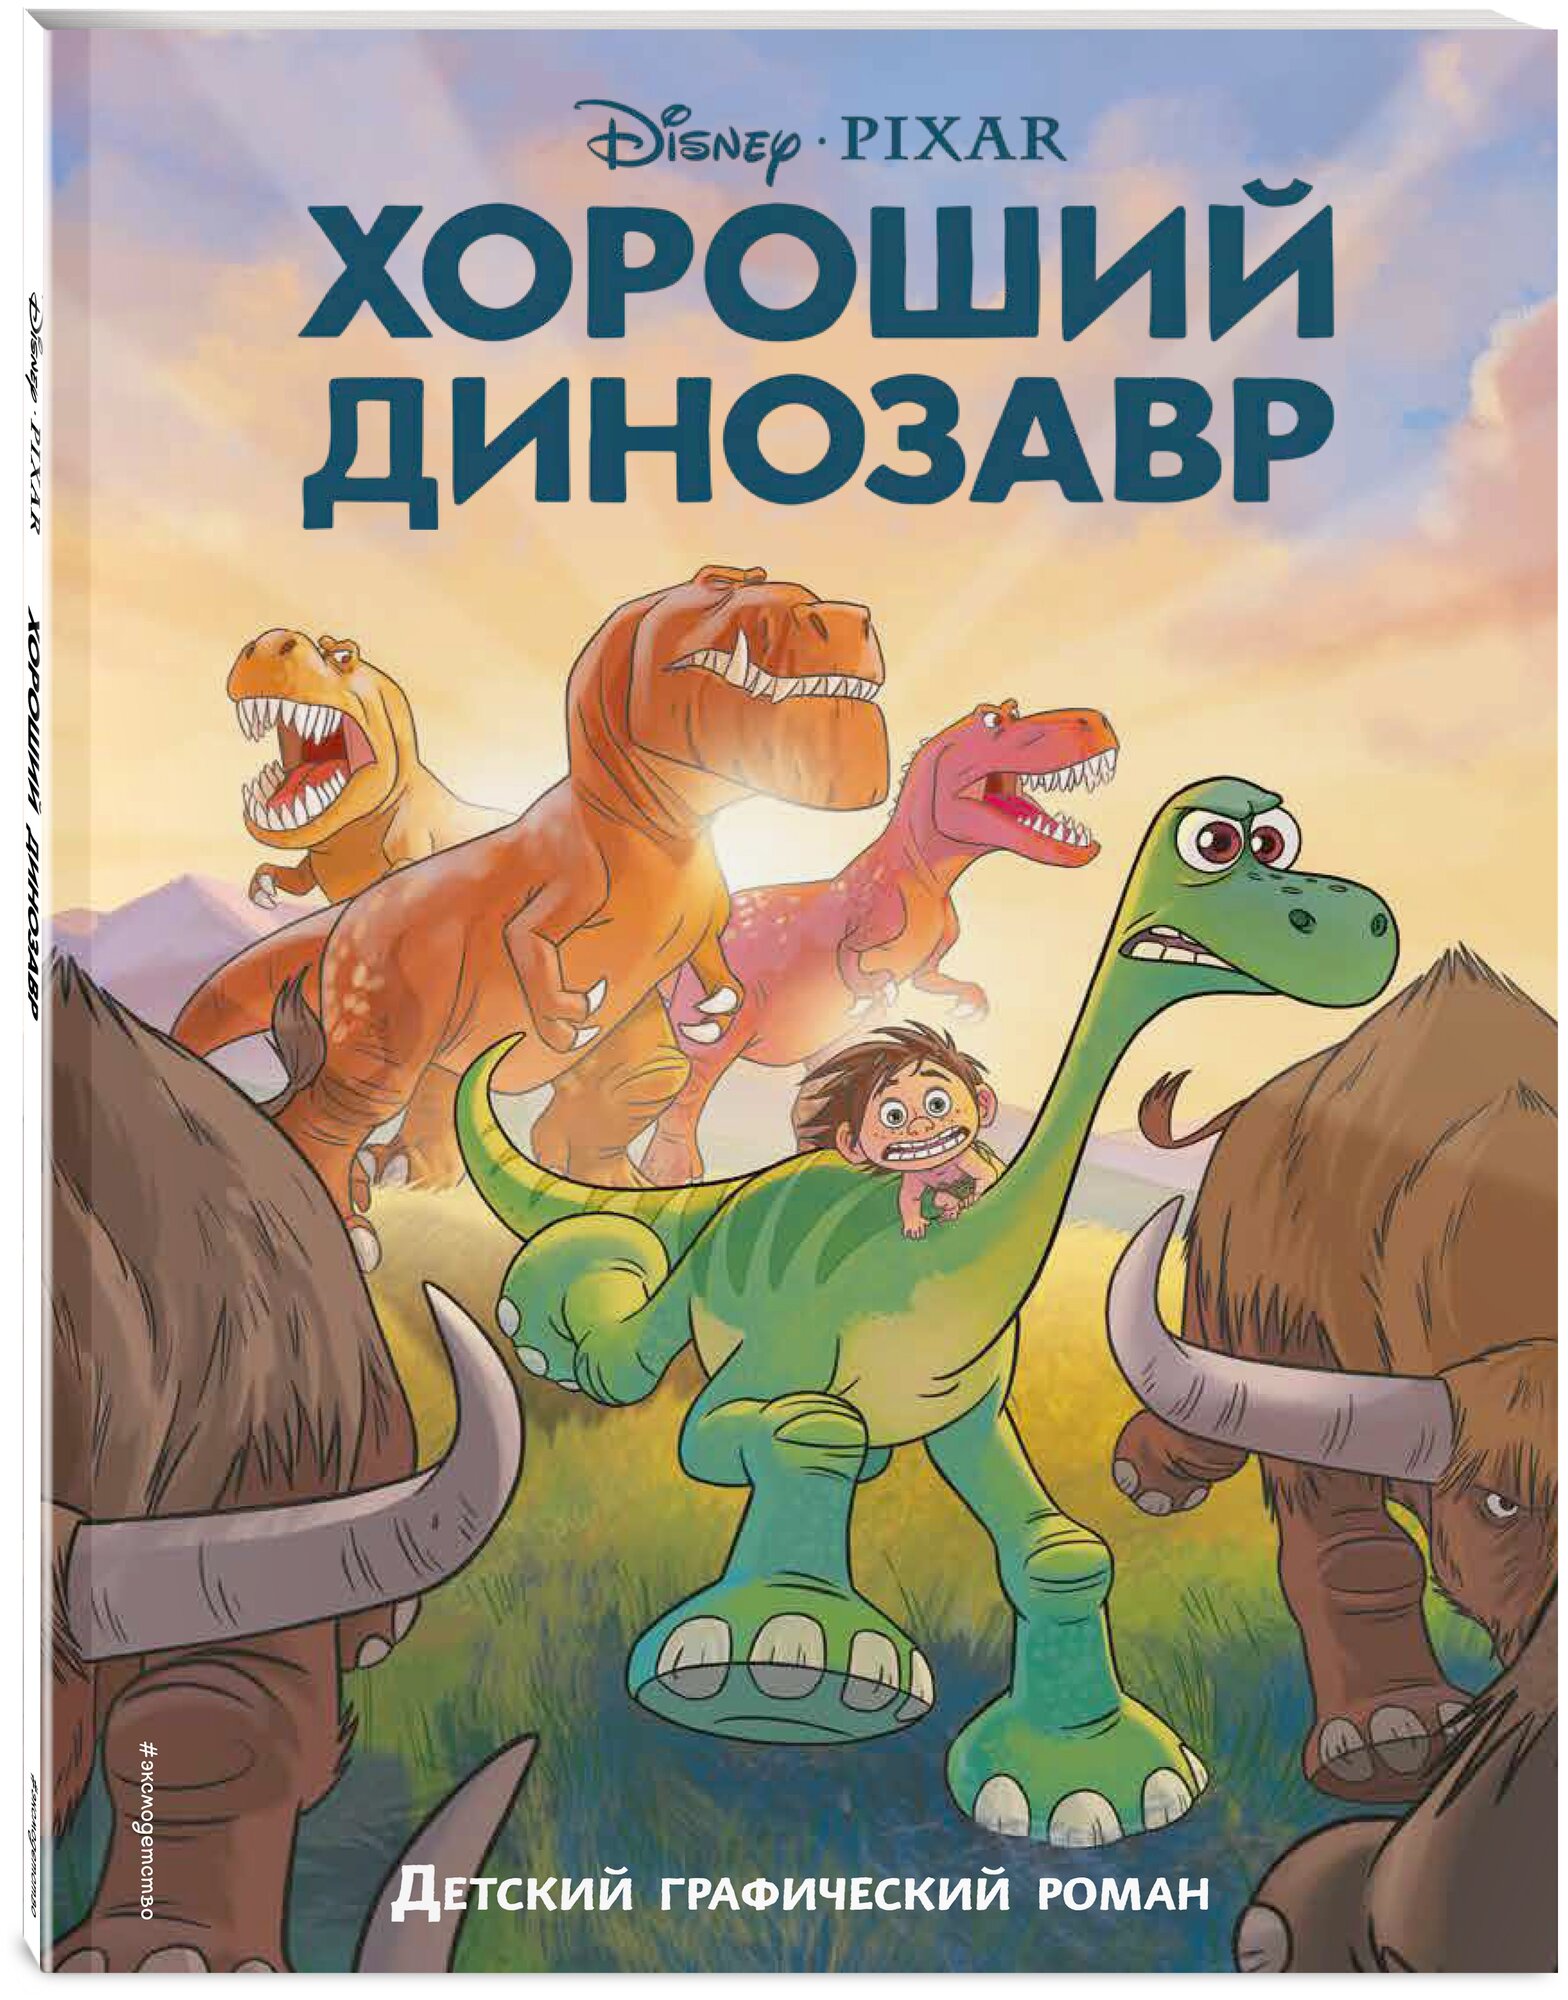 Хороший динозавр. Графический роман - фото №1